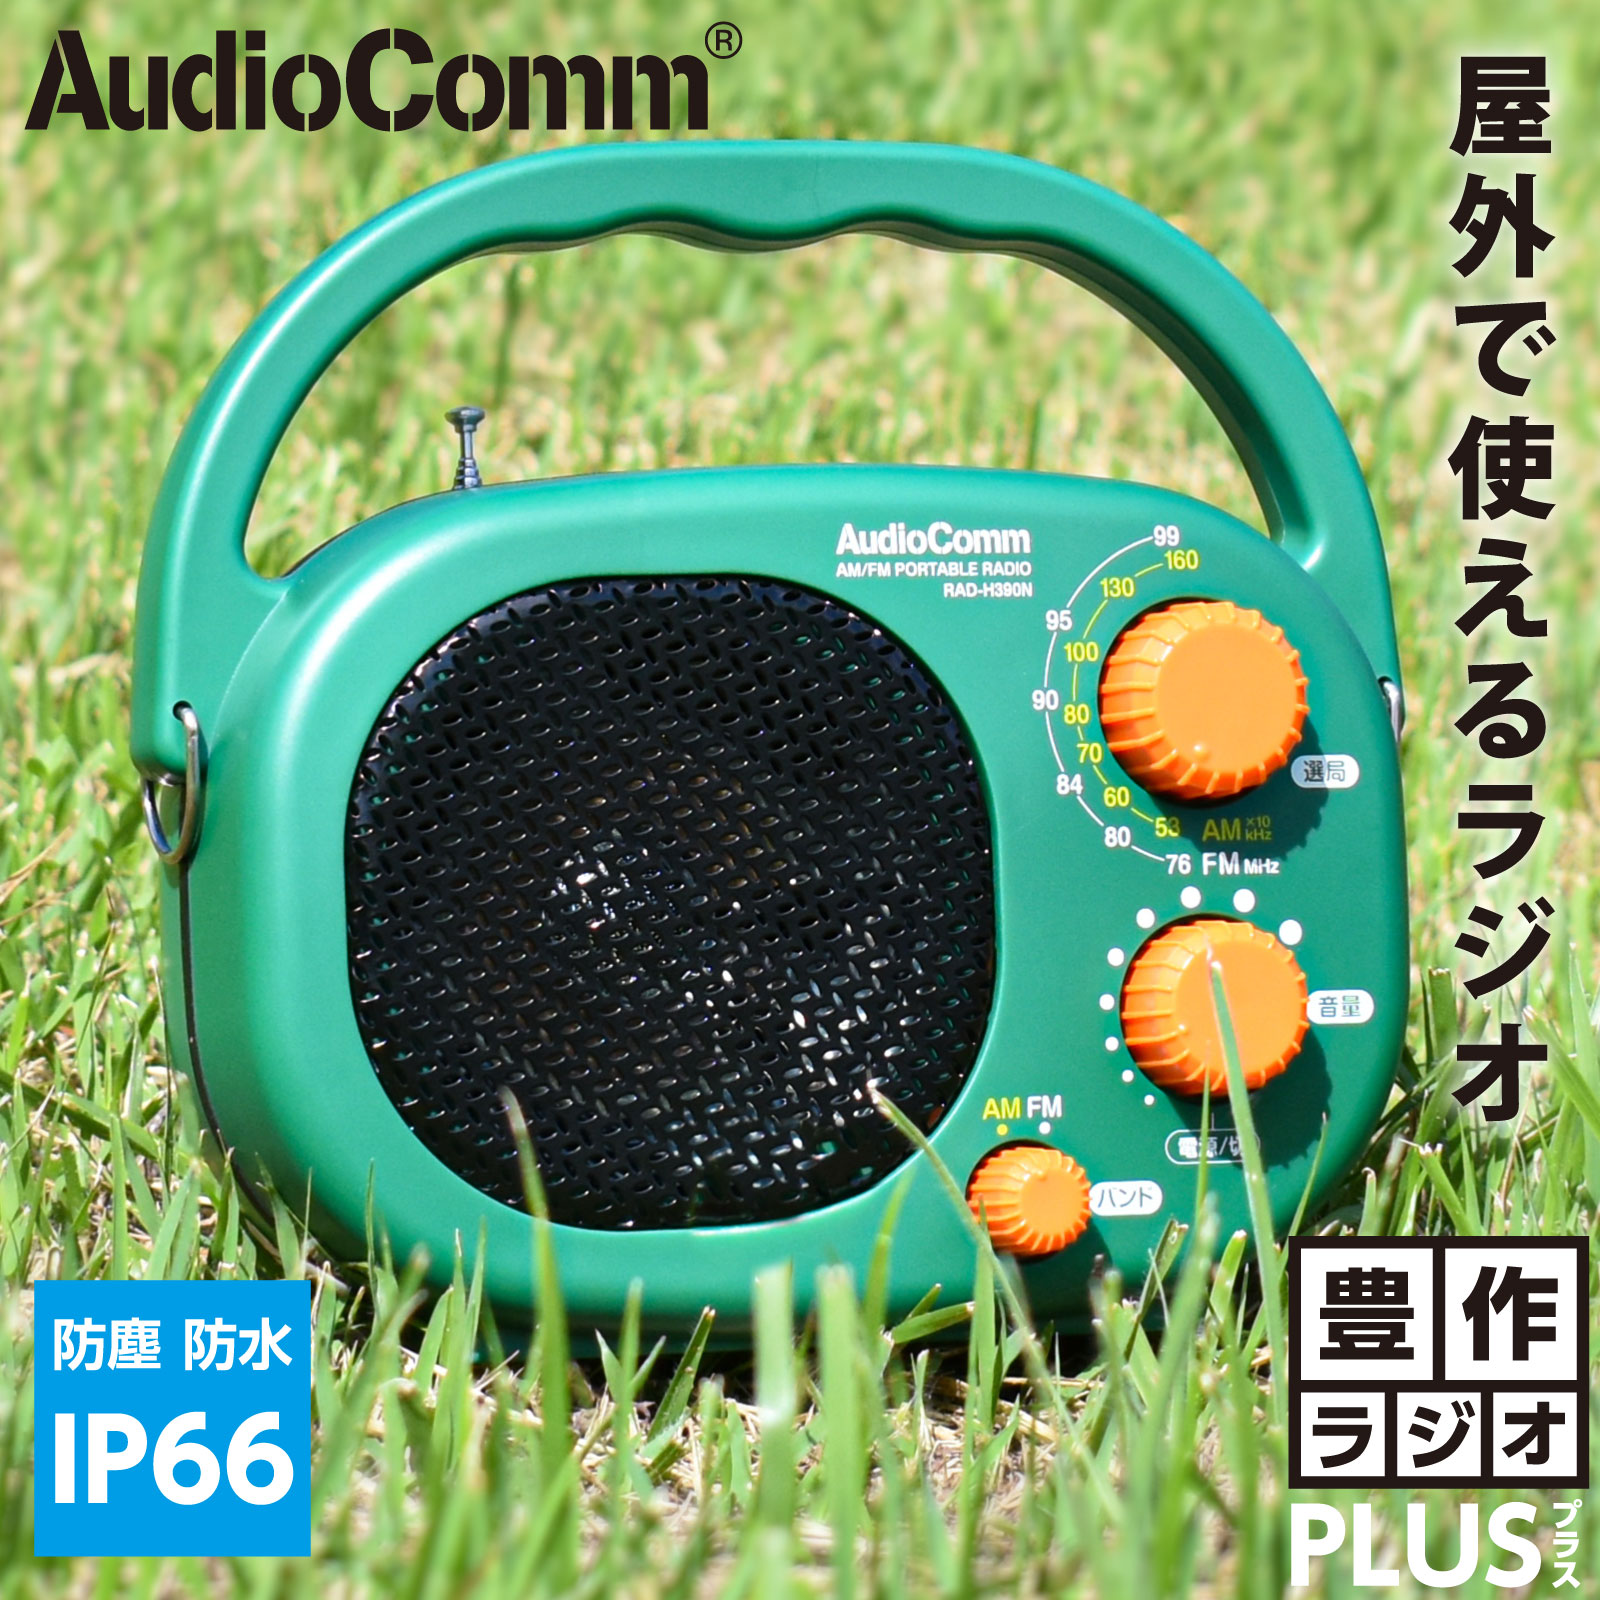 第一ネット オーム電機 AudioComm AM FMハンディサイズラジオ ブラック RAD-P388Z 03-1966 OHM 